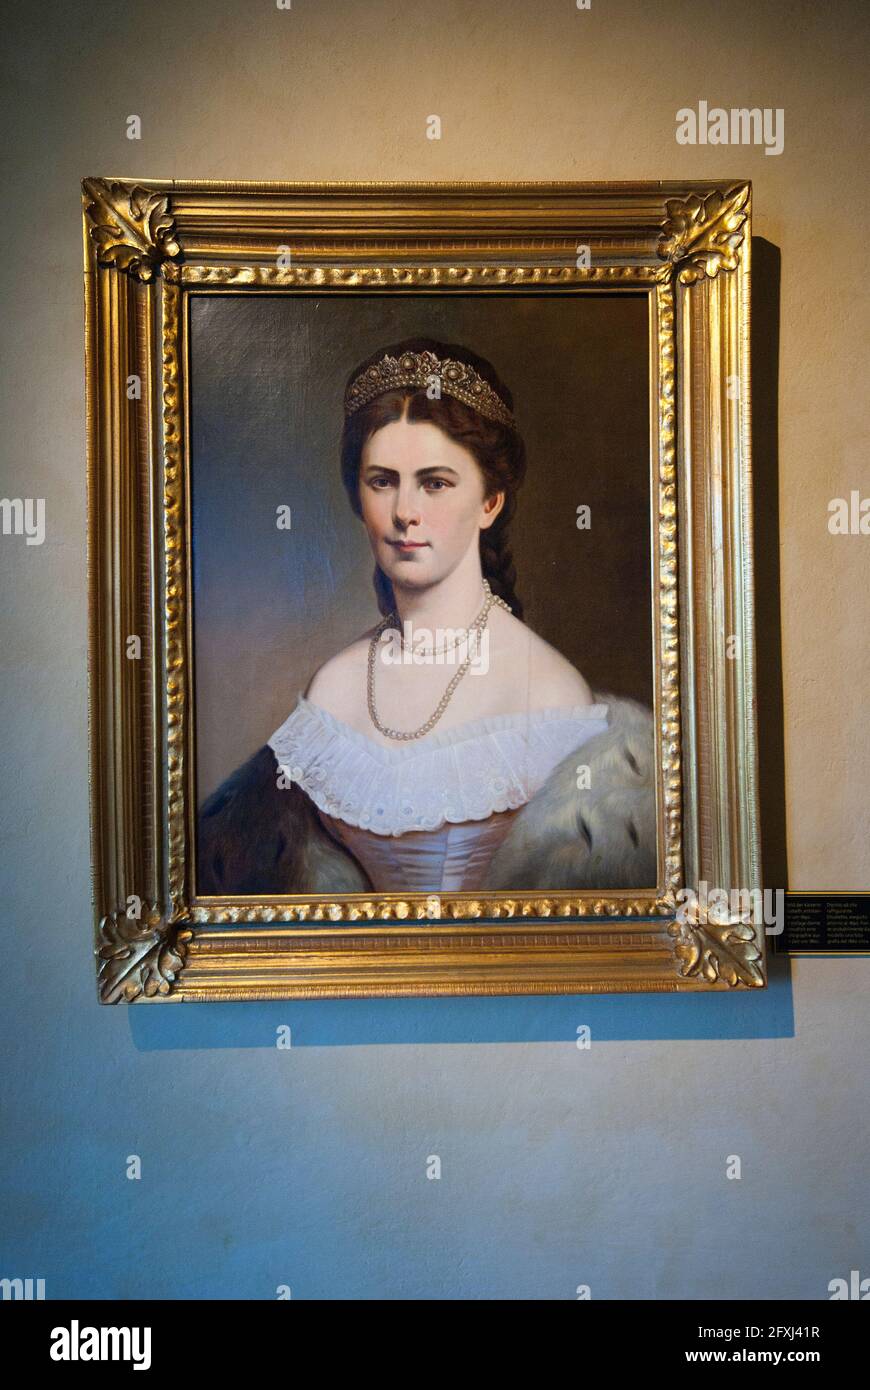 Ritratto di Elisabetta di Baviera imperatrice d'Austria (chiamata Sissi), olio su tela, Touriseum (museo del turismo), Merano, Trentino-Alto Adige, Italia Foto Stock